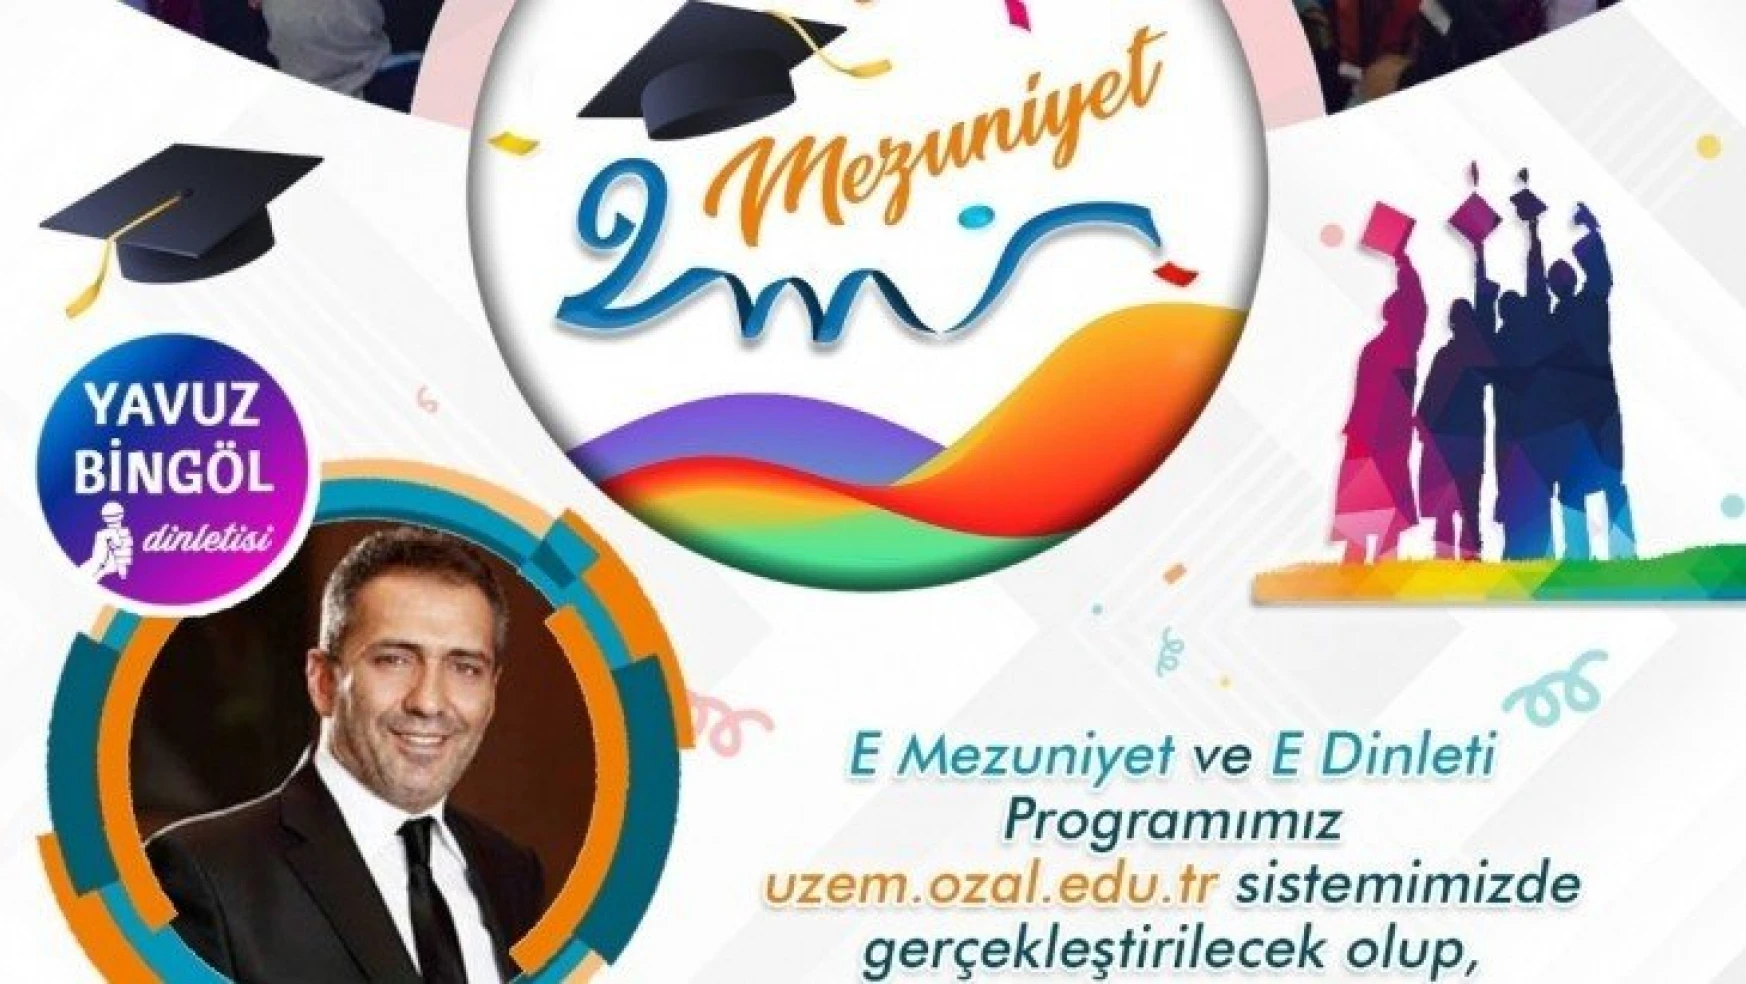 E-Mezuniyet töreni'nde Yavuz Bingöl e-konser verecek